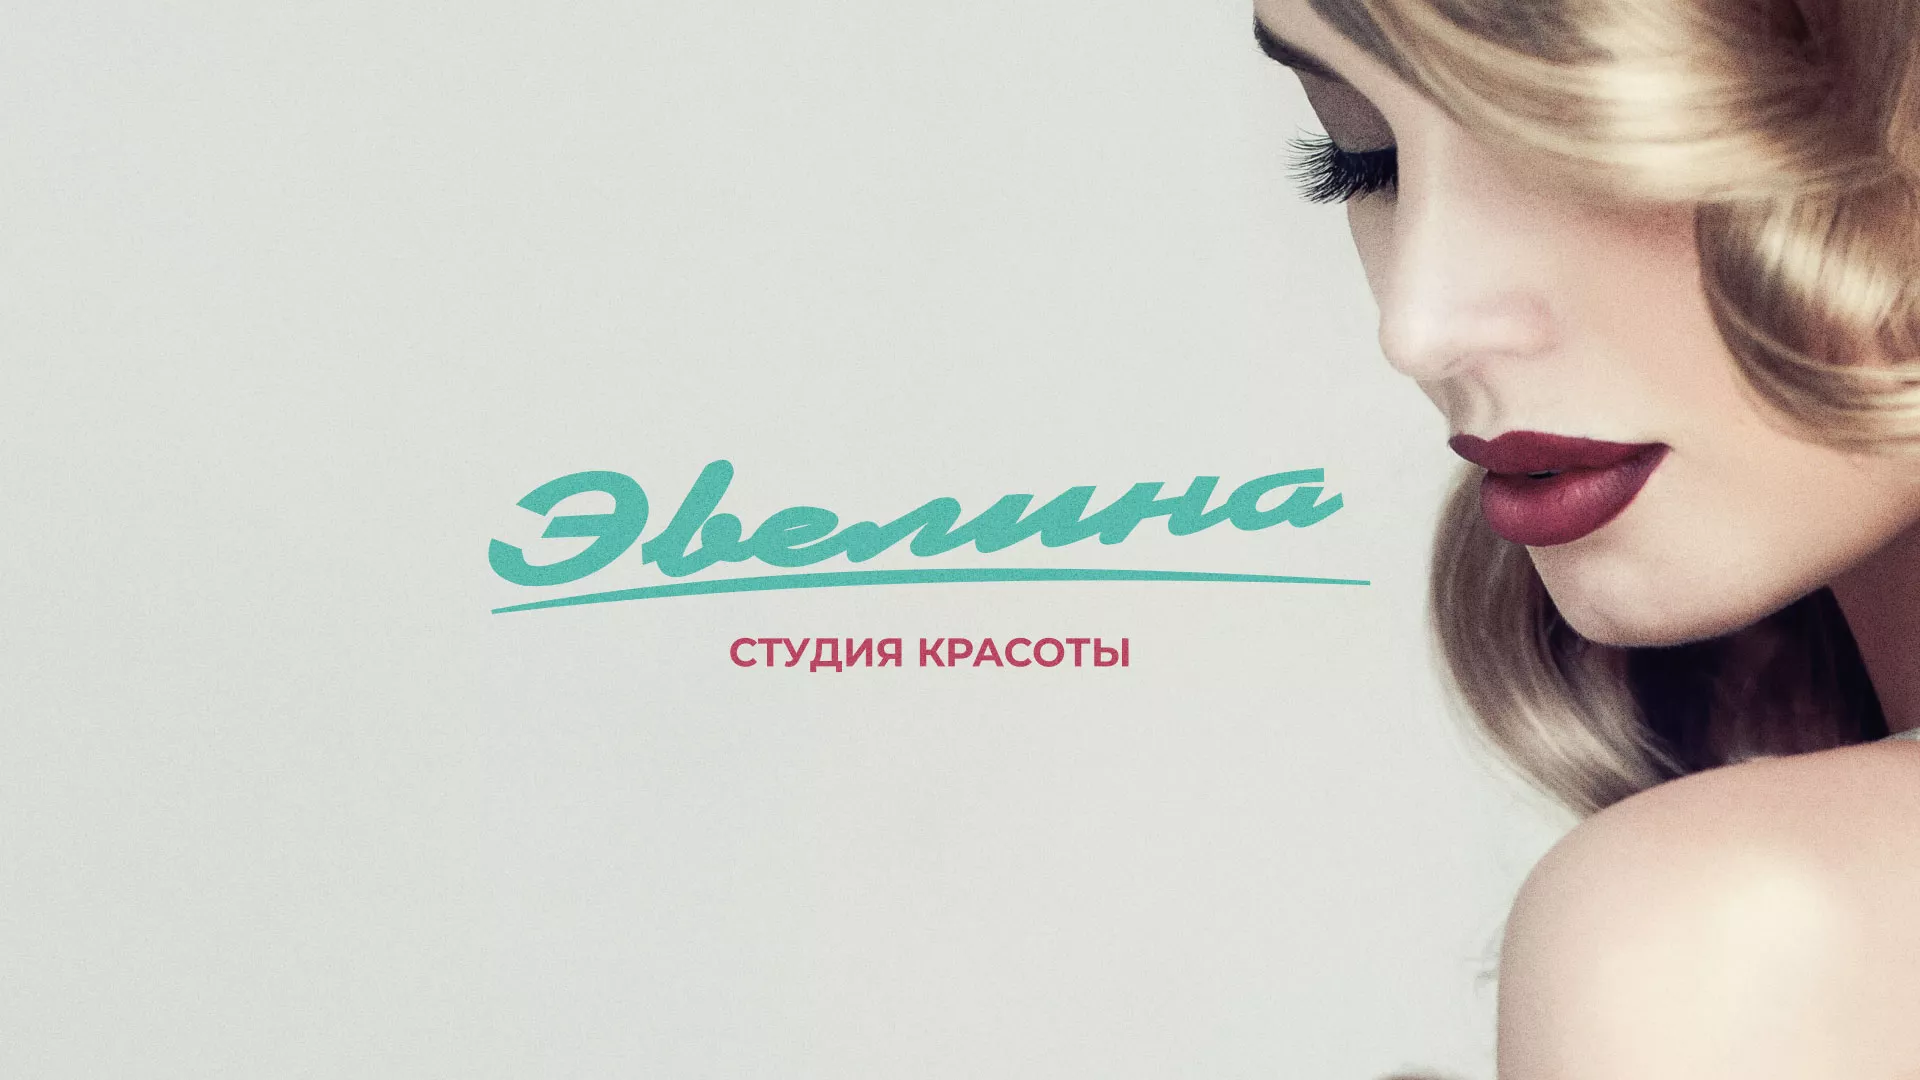 Разработка сайта для салона красоты «Эвелина» в Беломорске